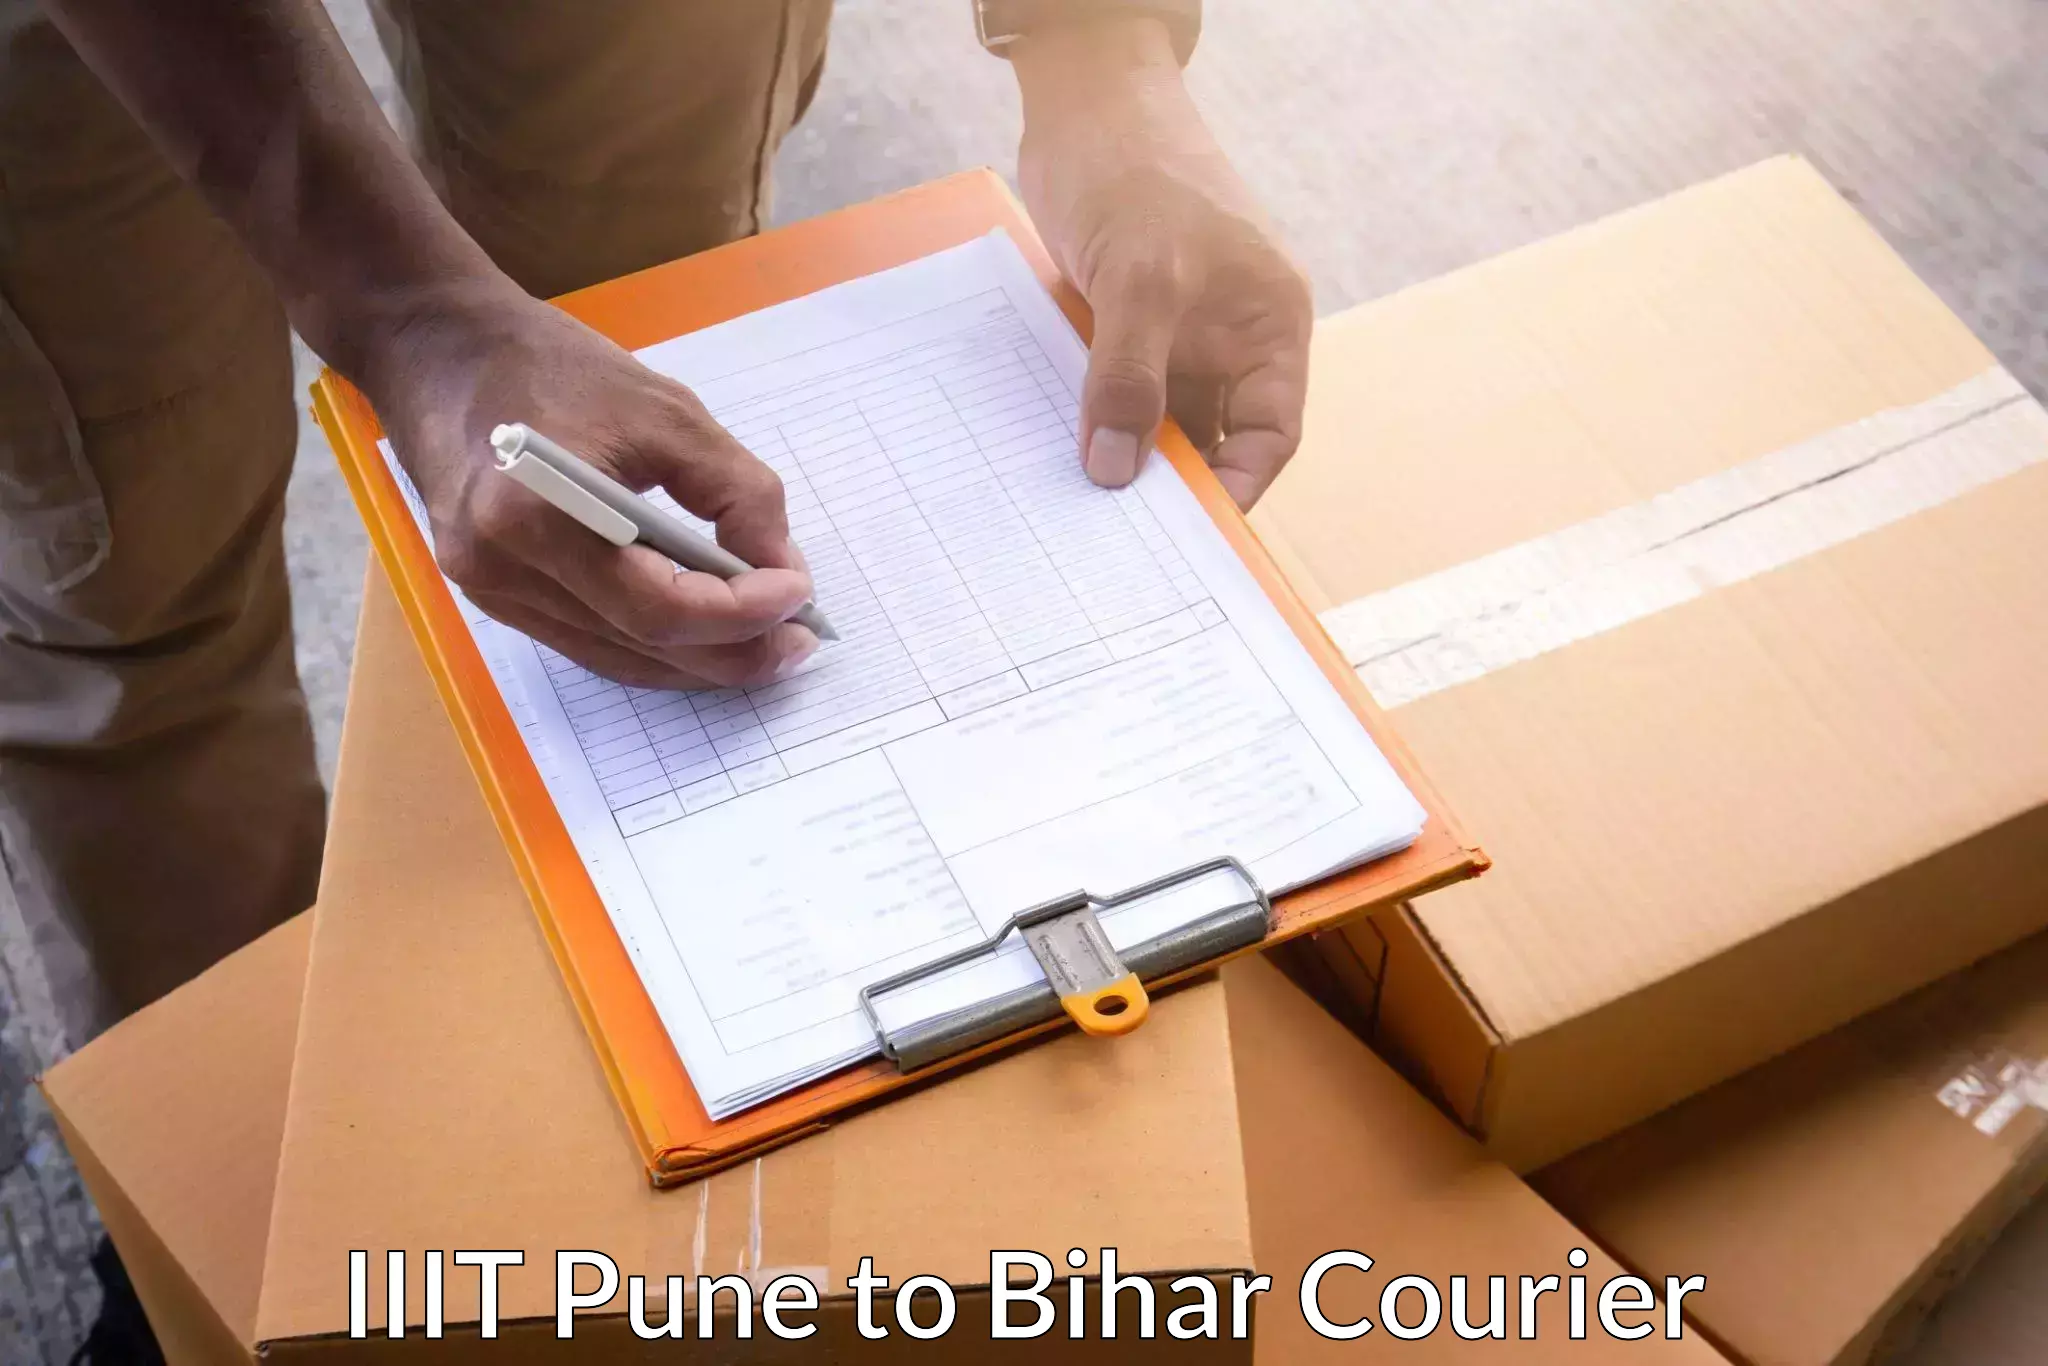 Express postal services IIIT Pune to Bihar